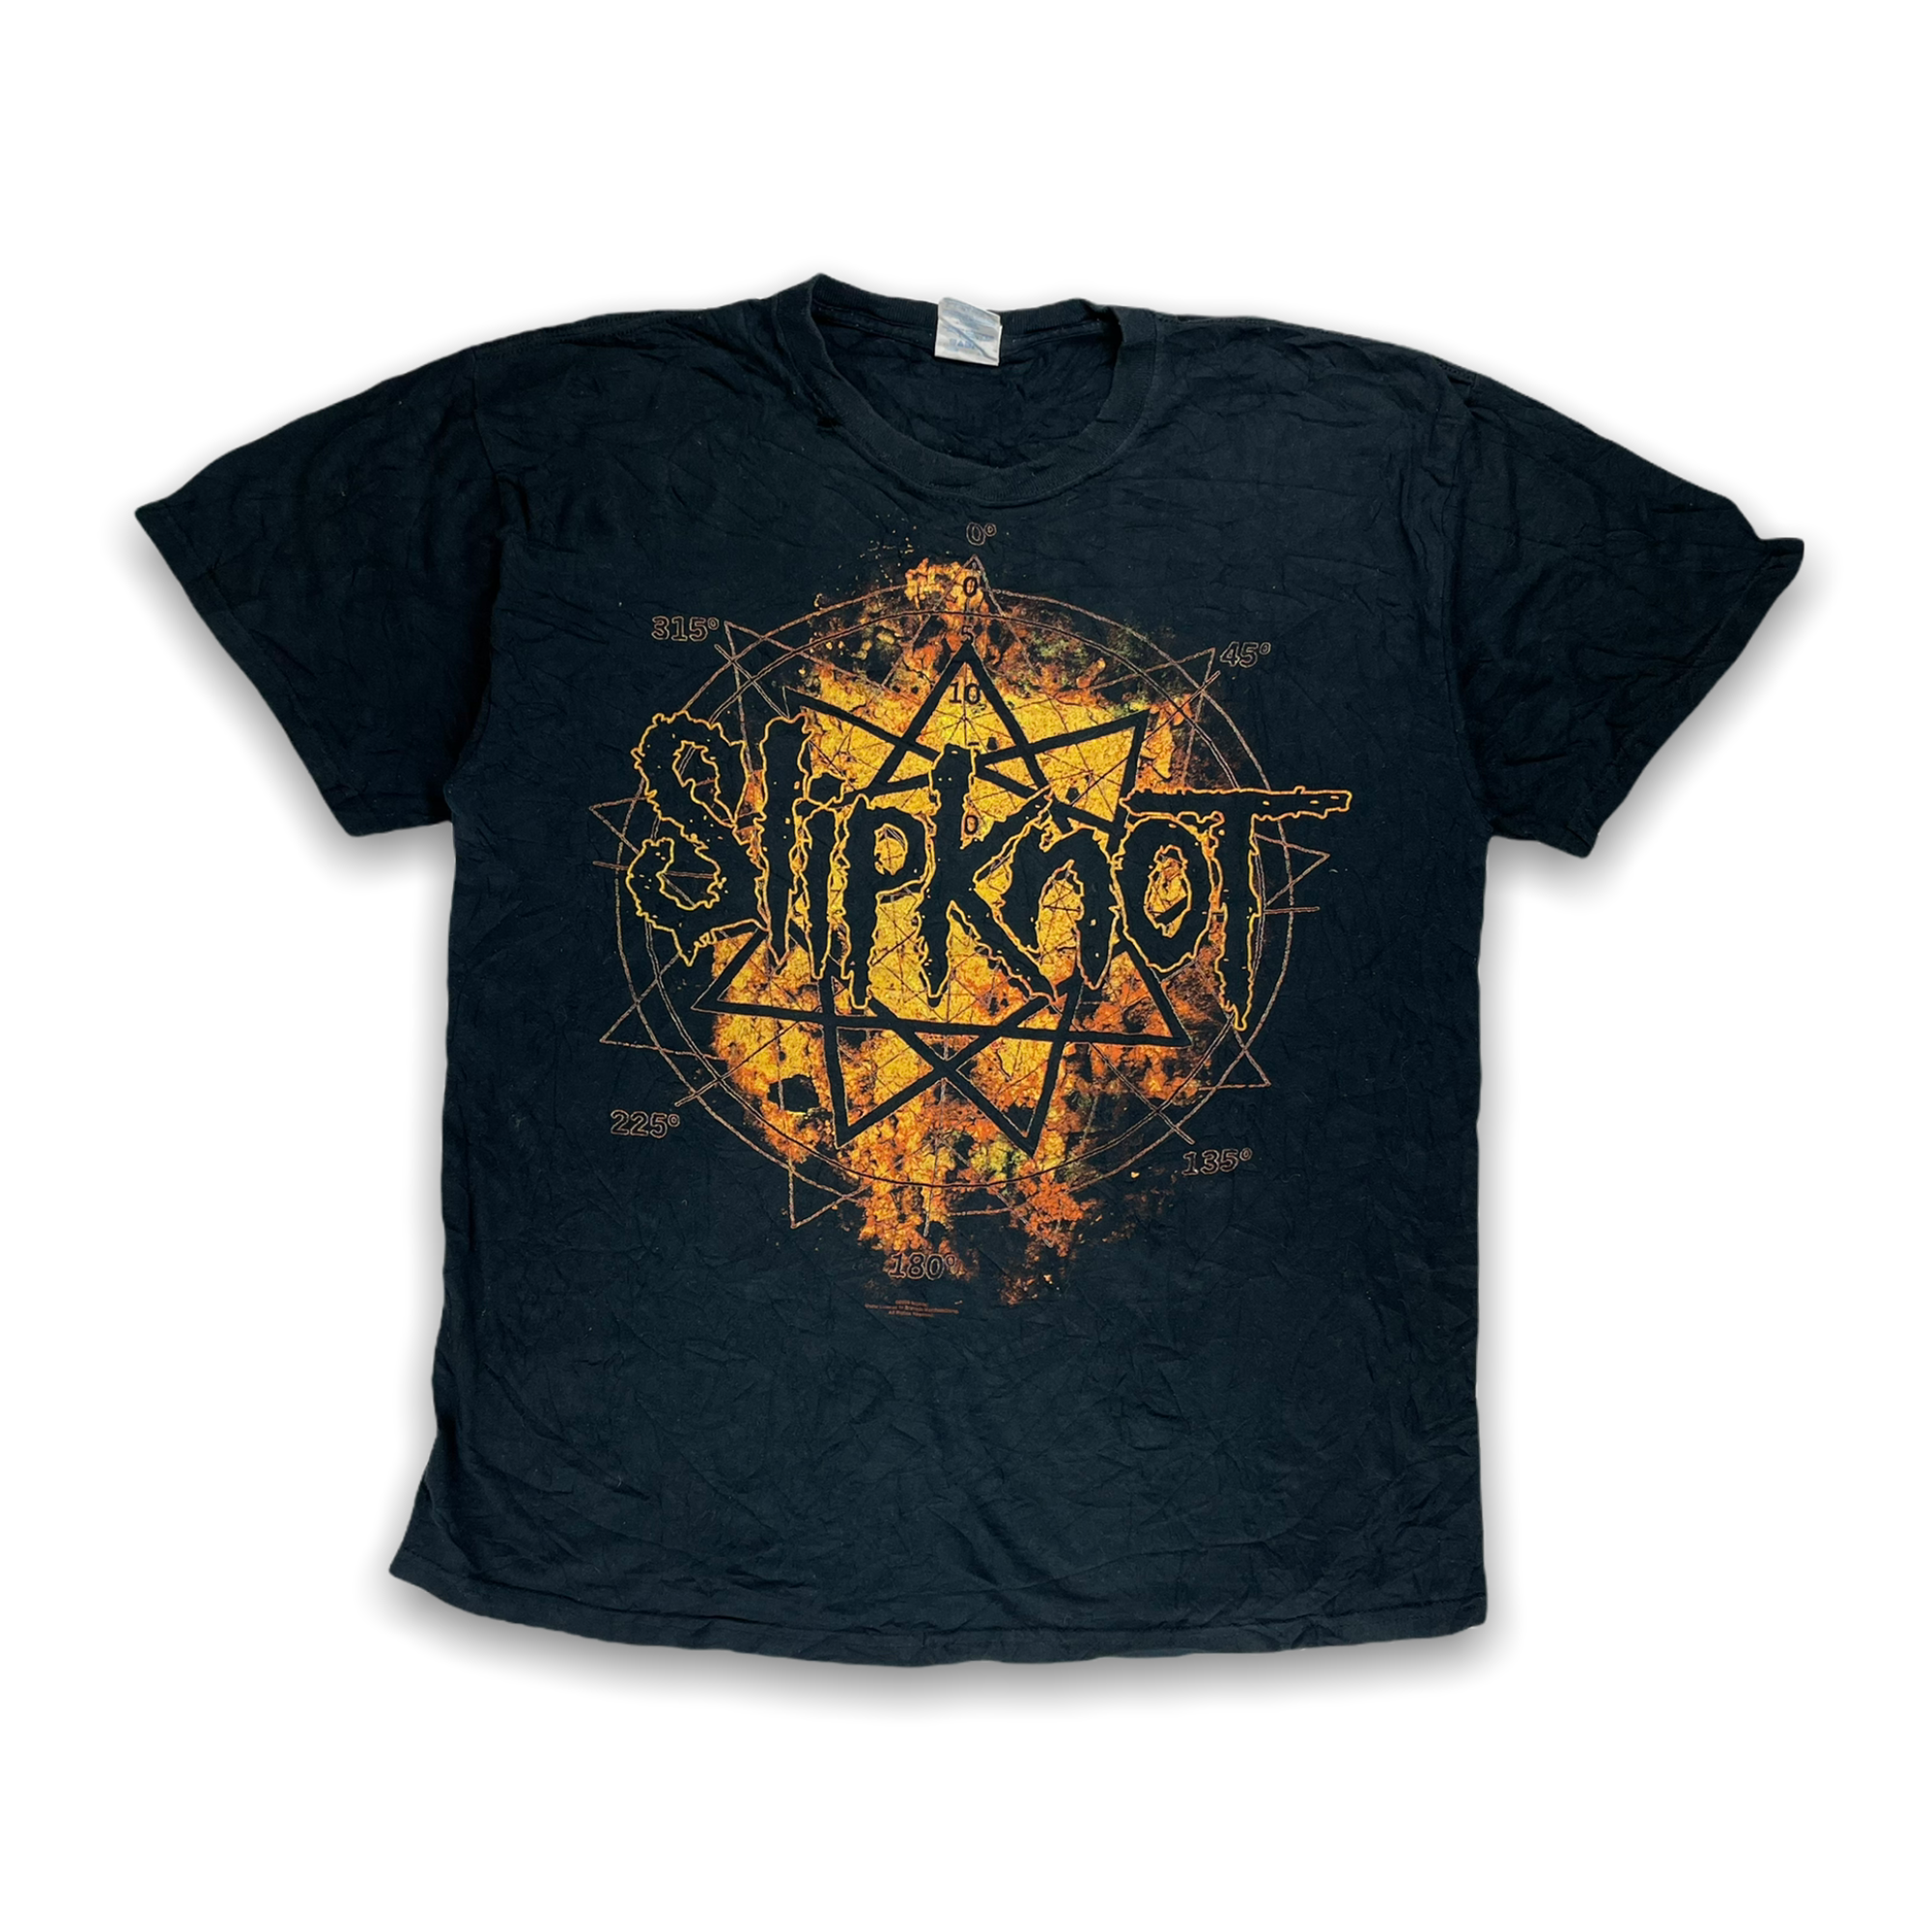 Vintage Slipknot All Hope Is Gone T-Shirt - Restorecph